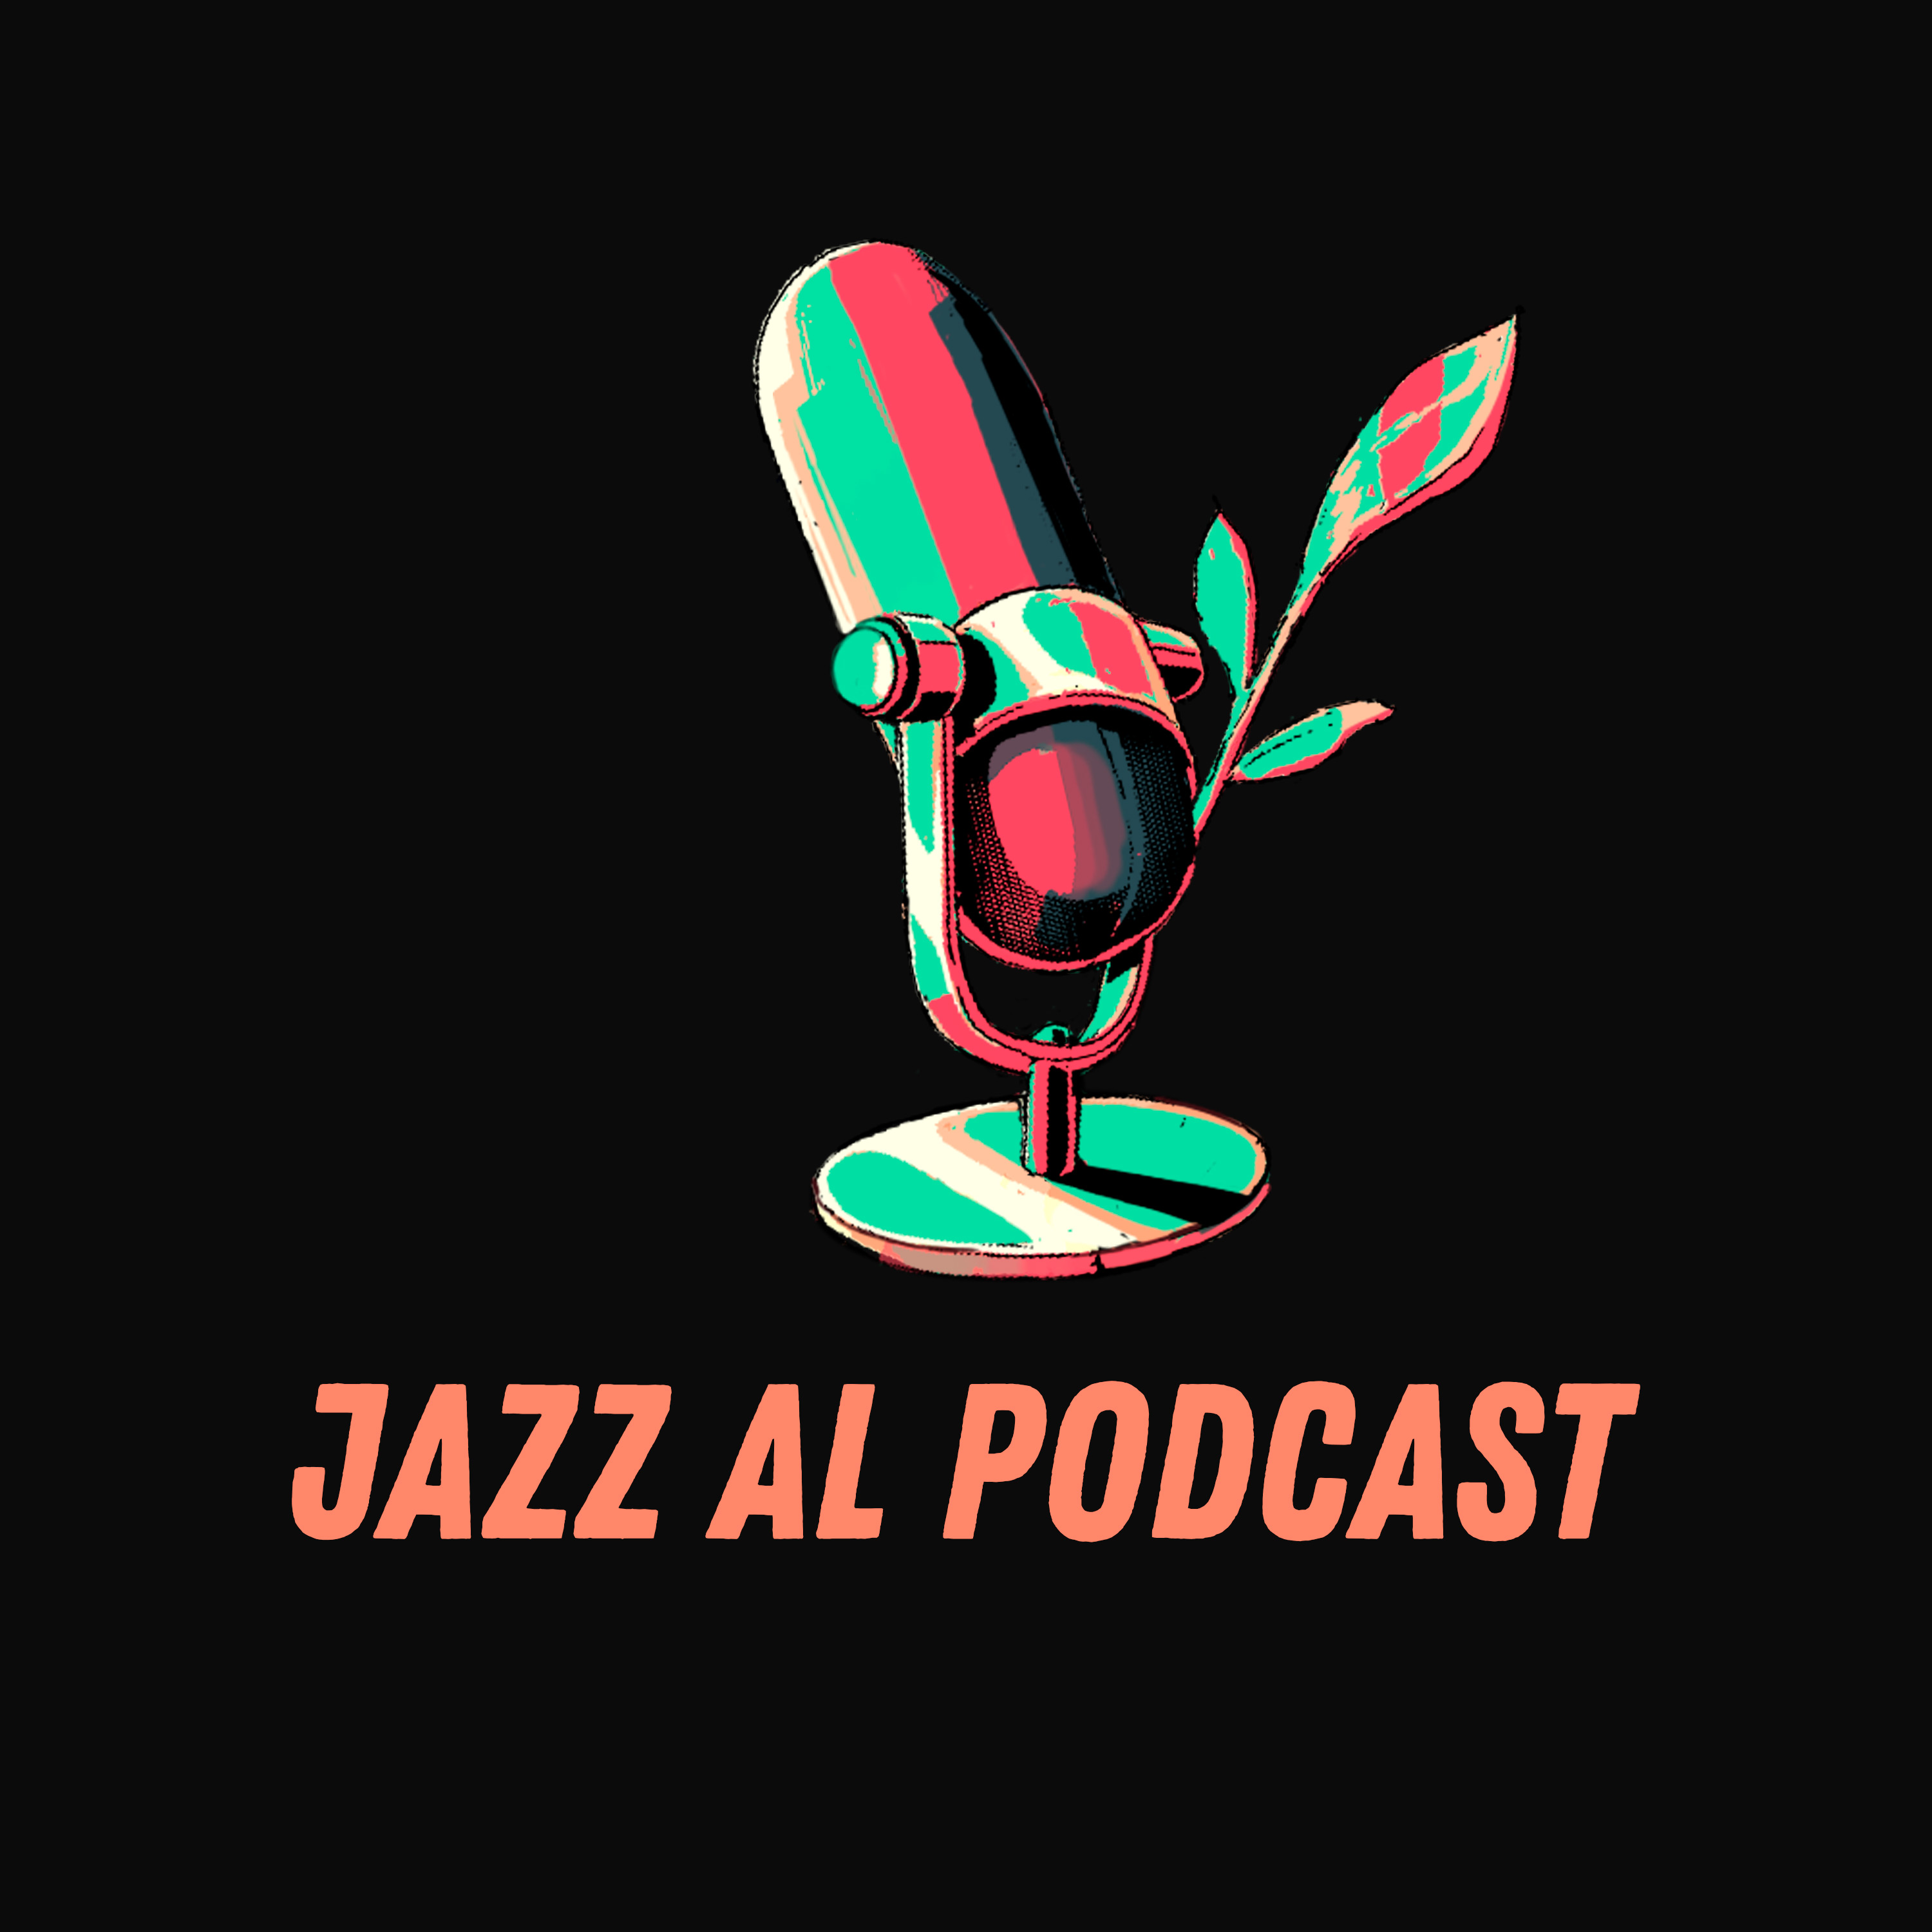 Imagen de Jazz al podcast